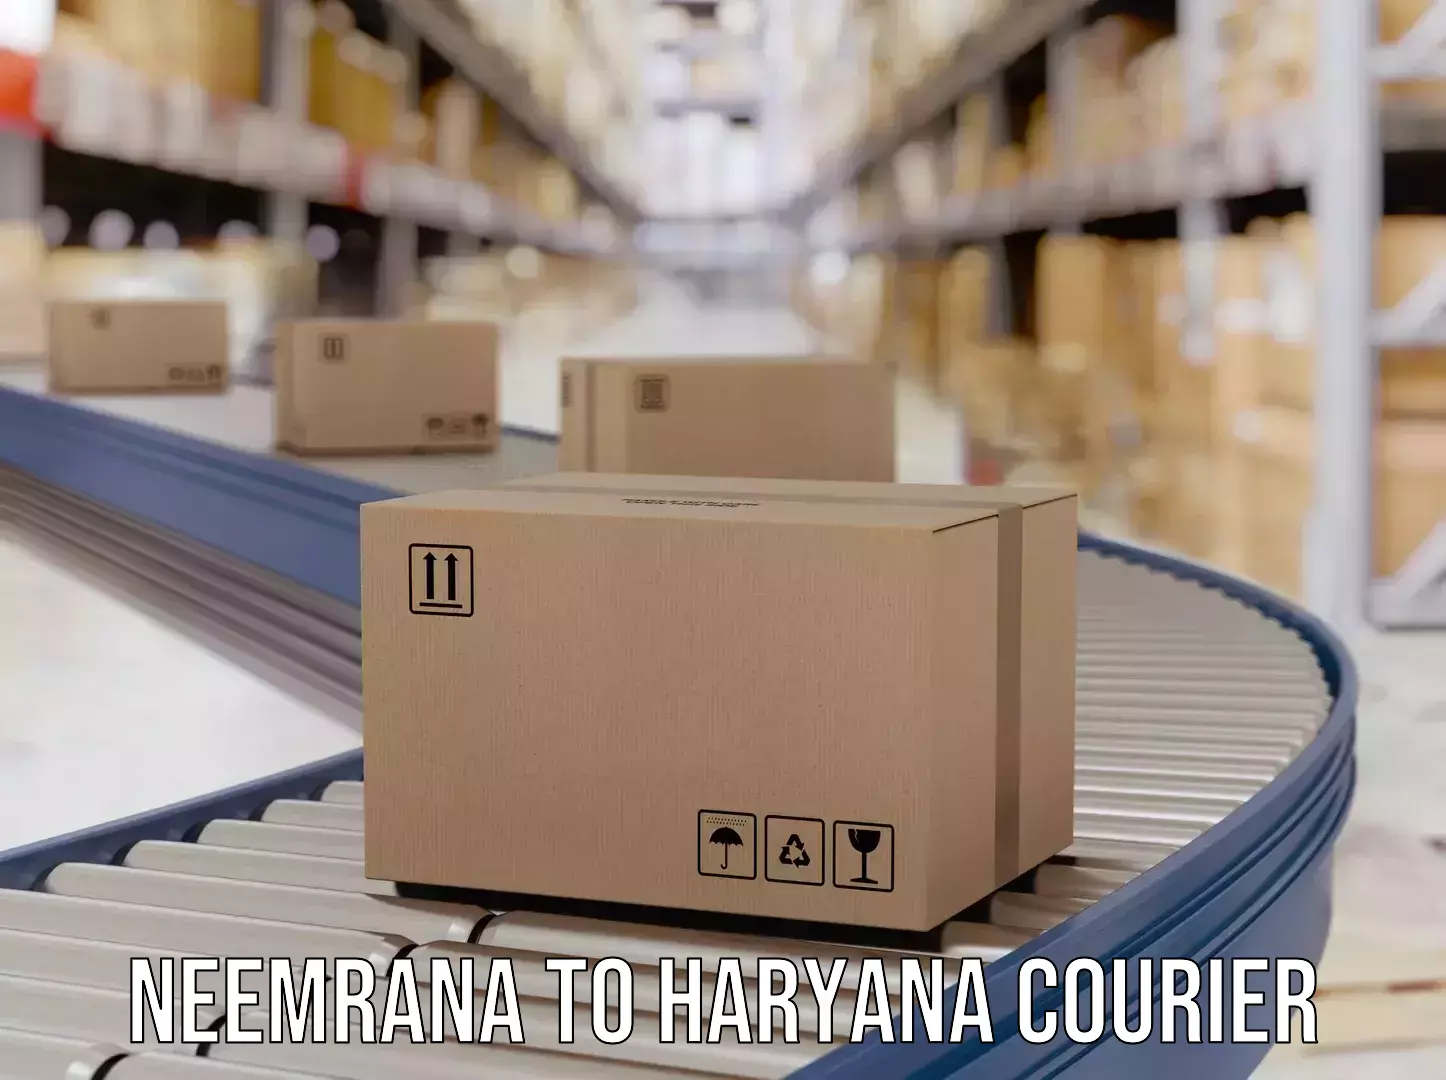 Courier service partnerships Neemrana to Haryana